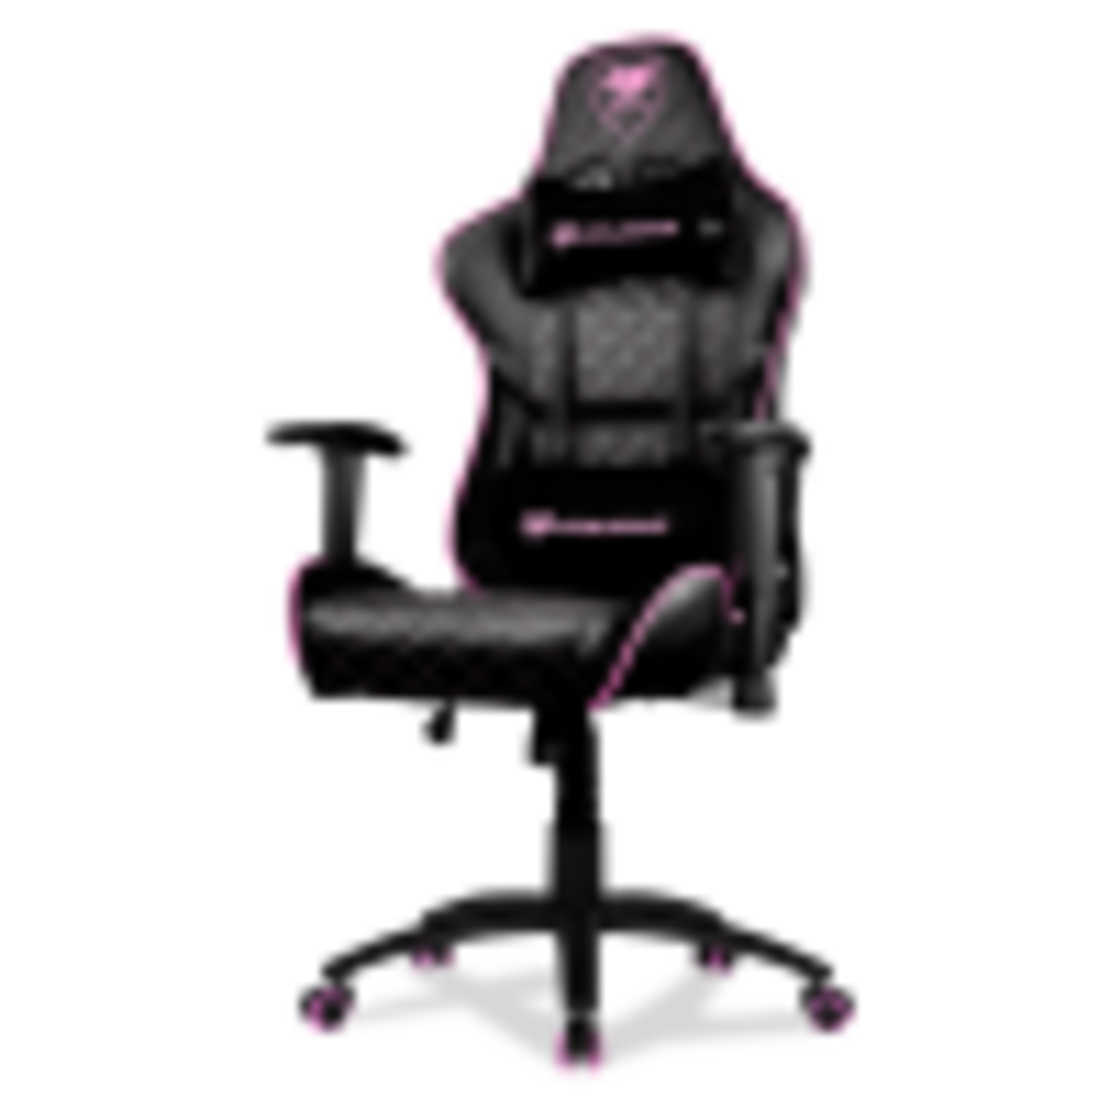 כסא גיימינג COUGAR Armor One Pink gaming chair